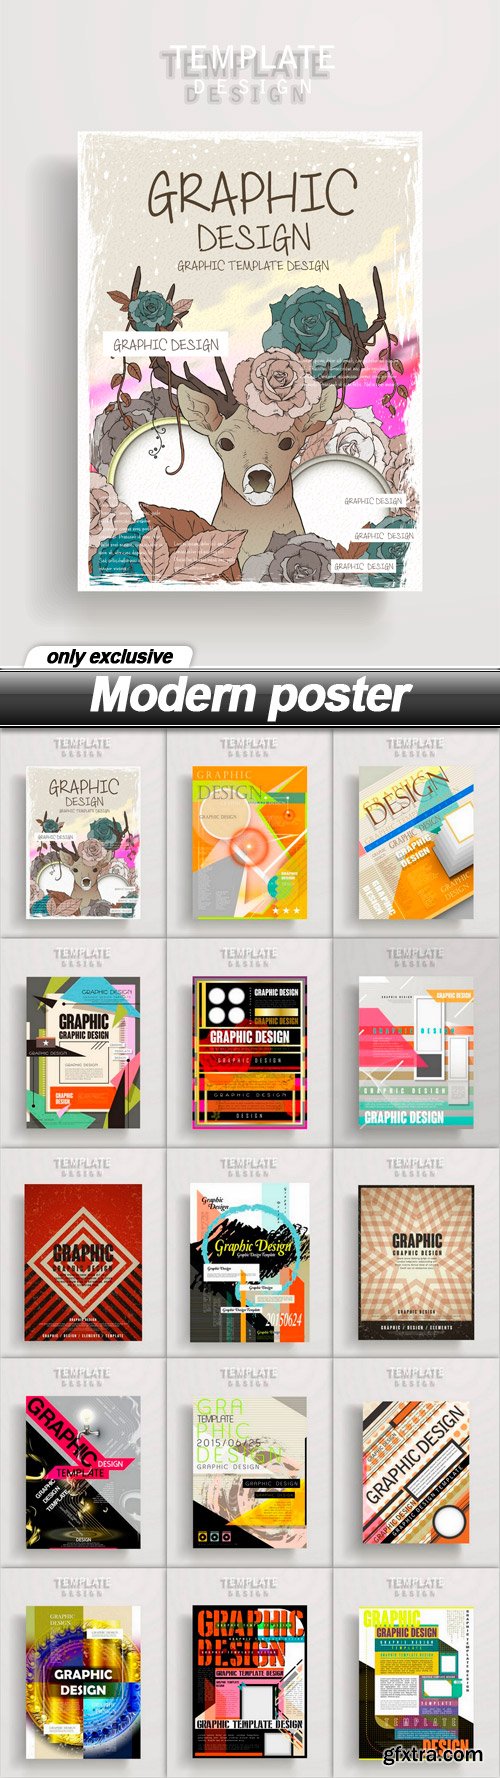 Modern poster - 15 EPS